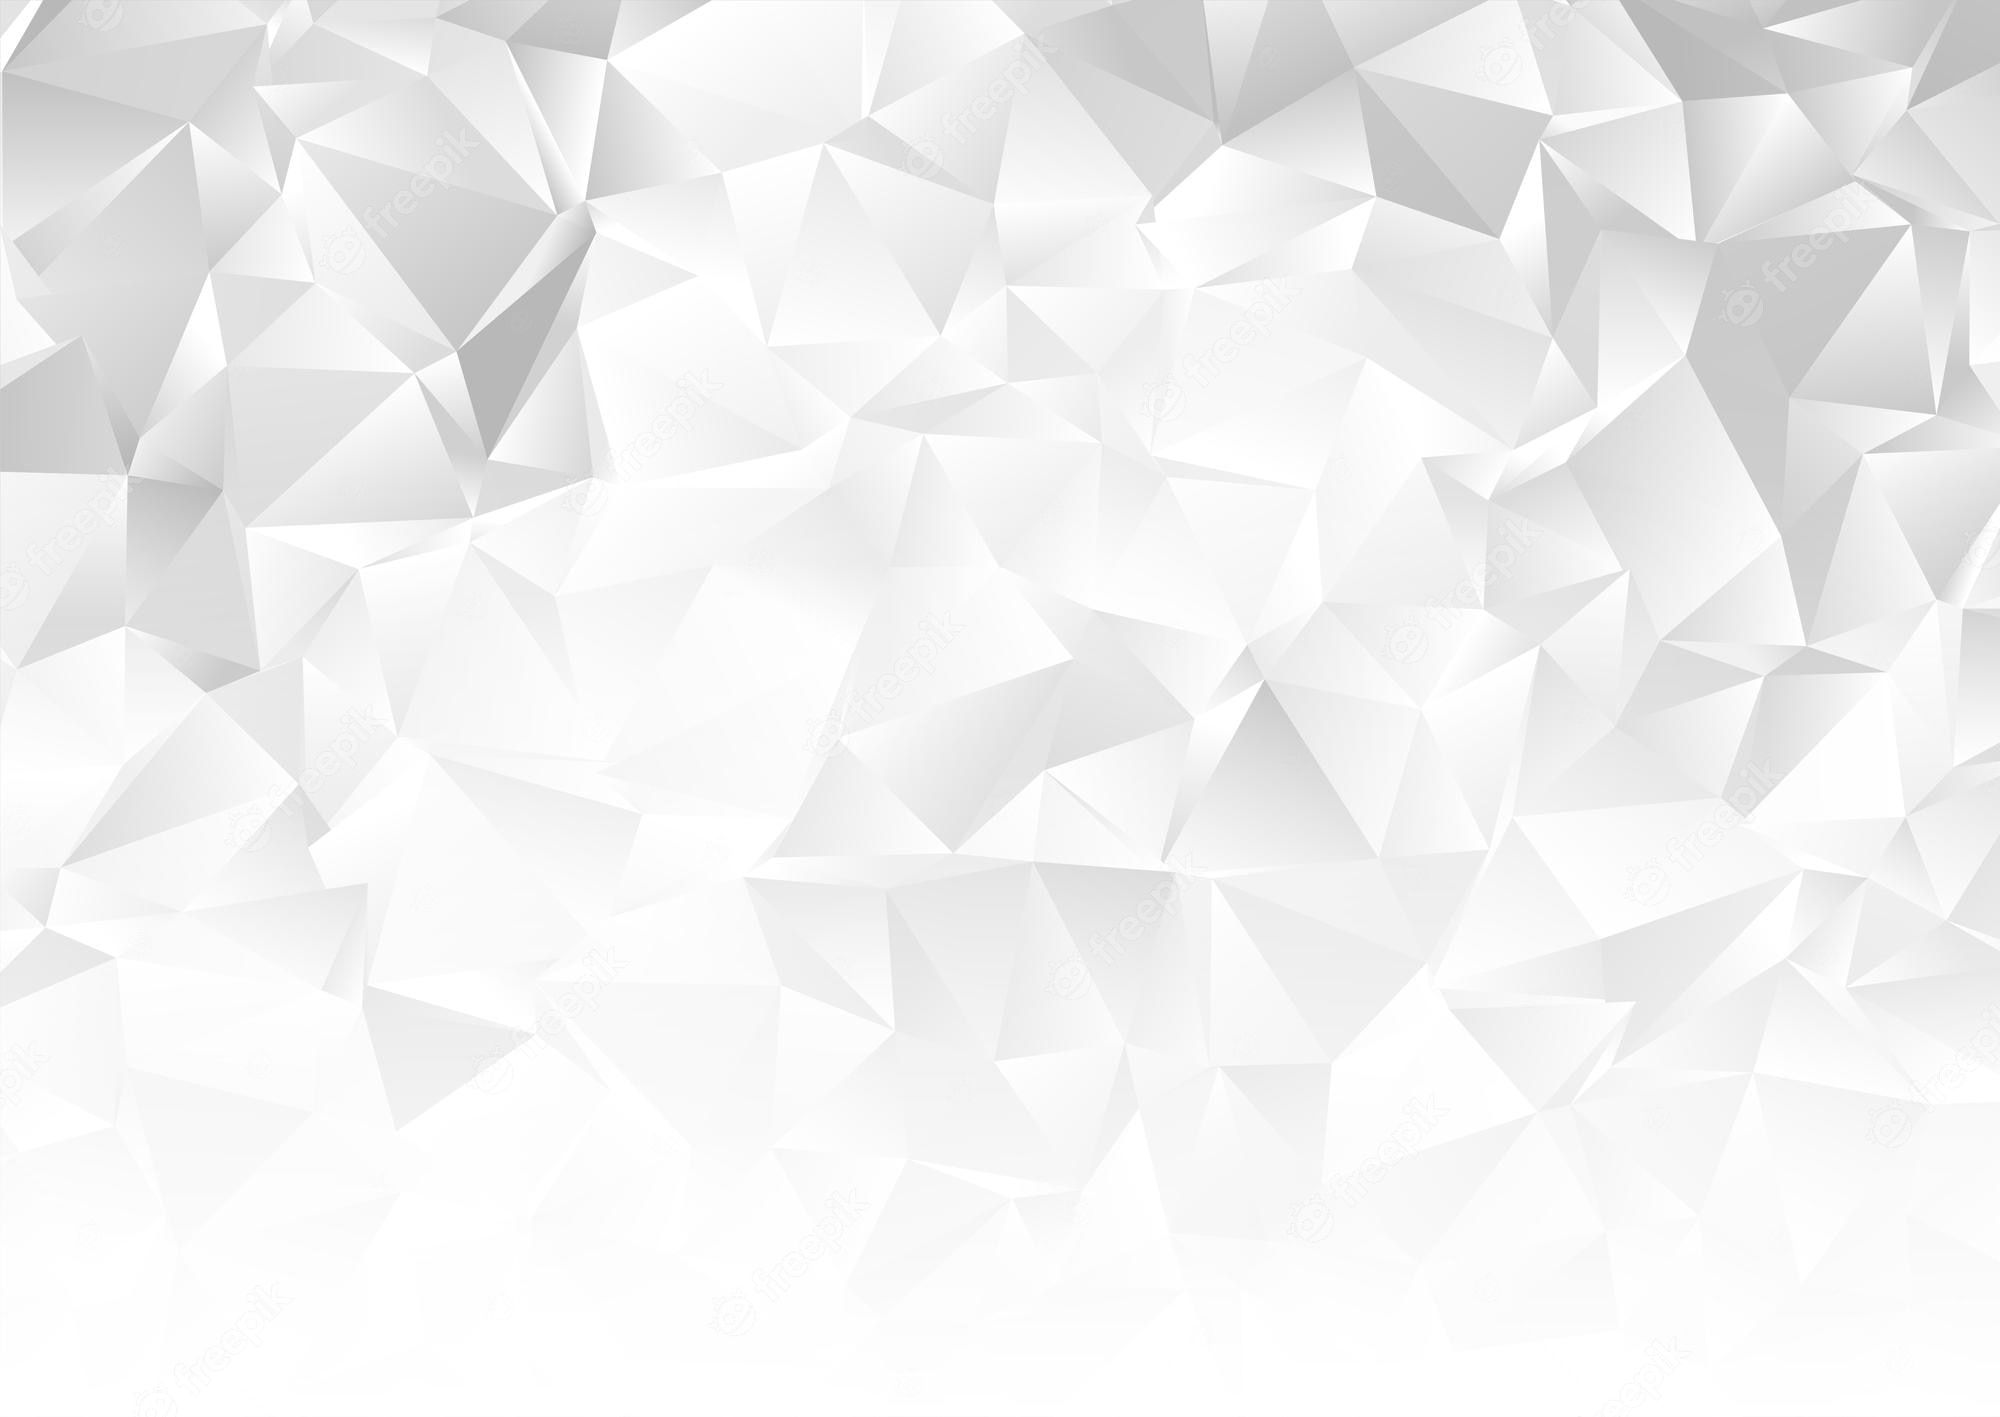  Diamant Hintergrundbild 2000x1417. Diamant Hintergrund Bilder Download auf Freepik